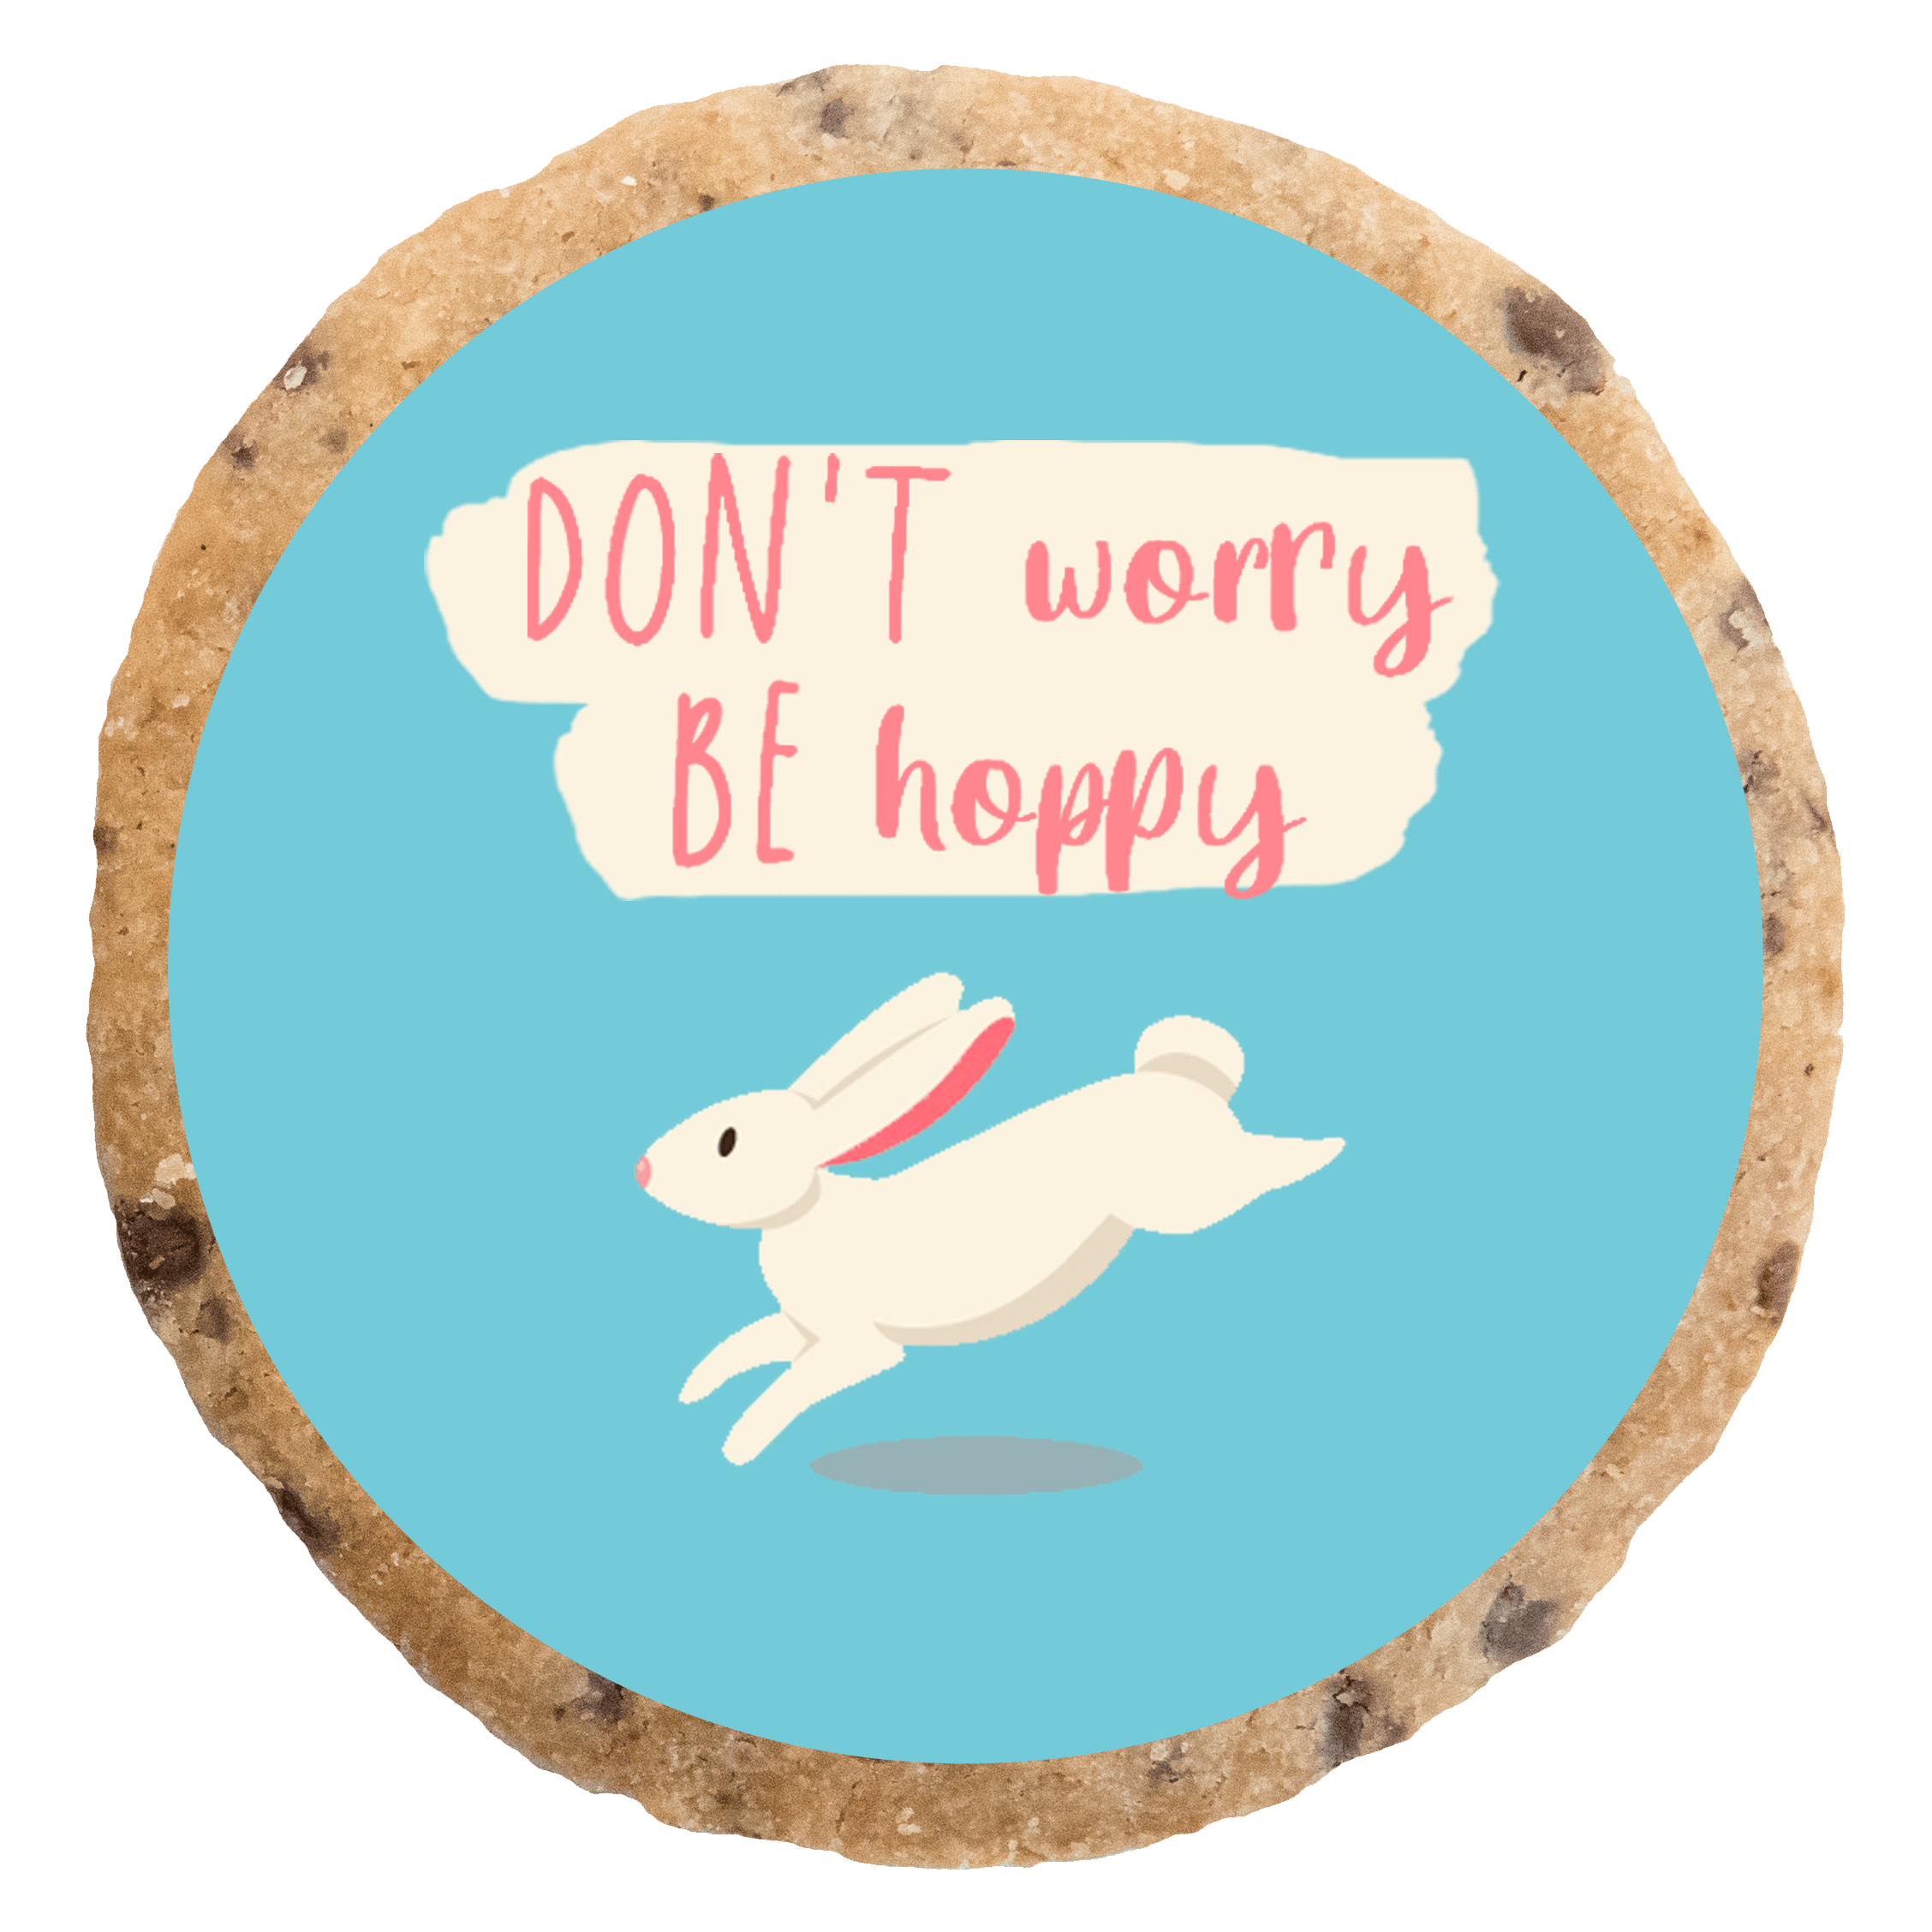 "Don't worry be hoppy" MotivKEKS